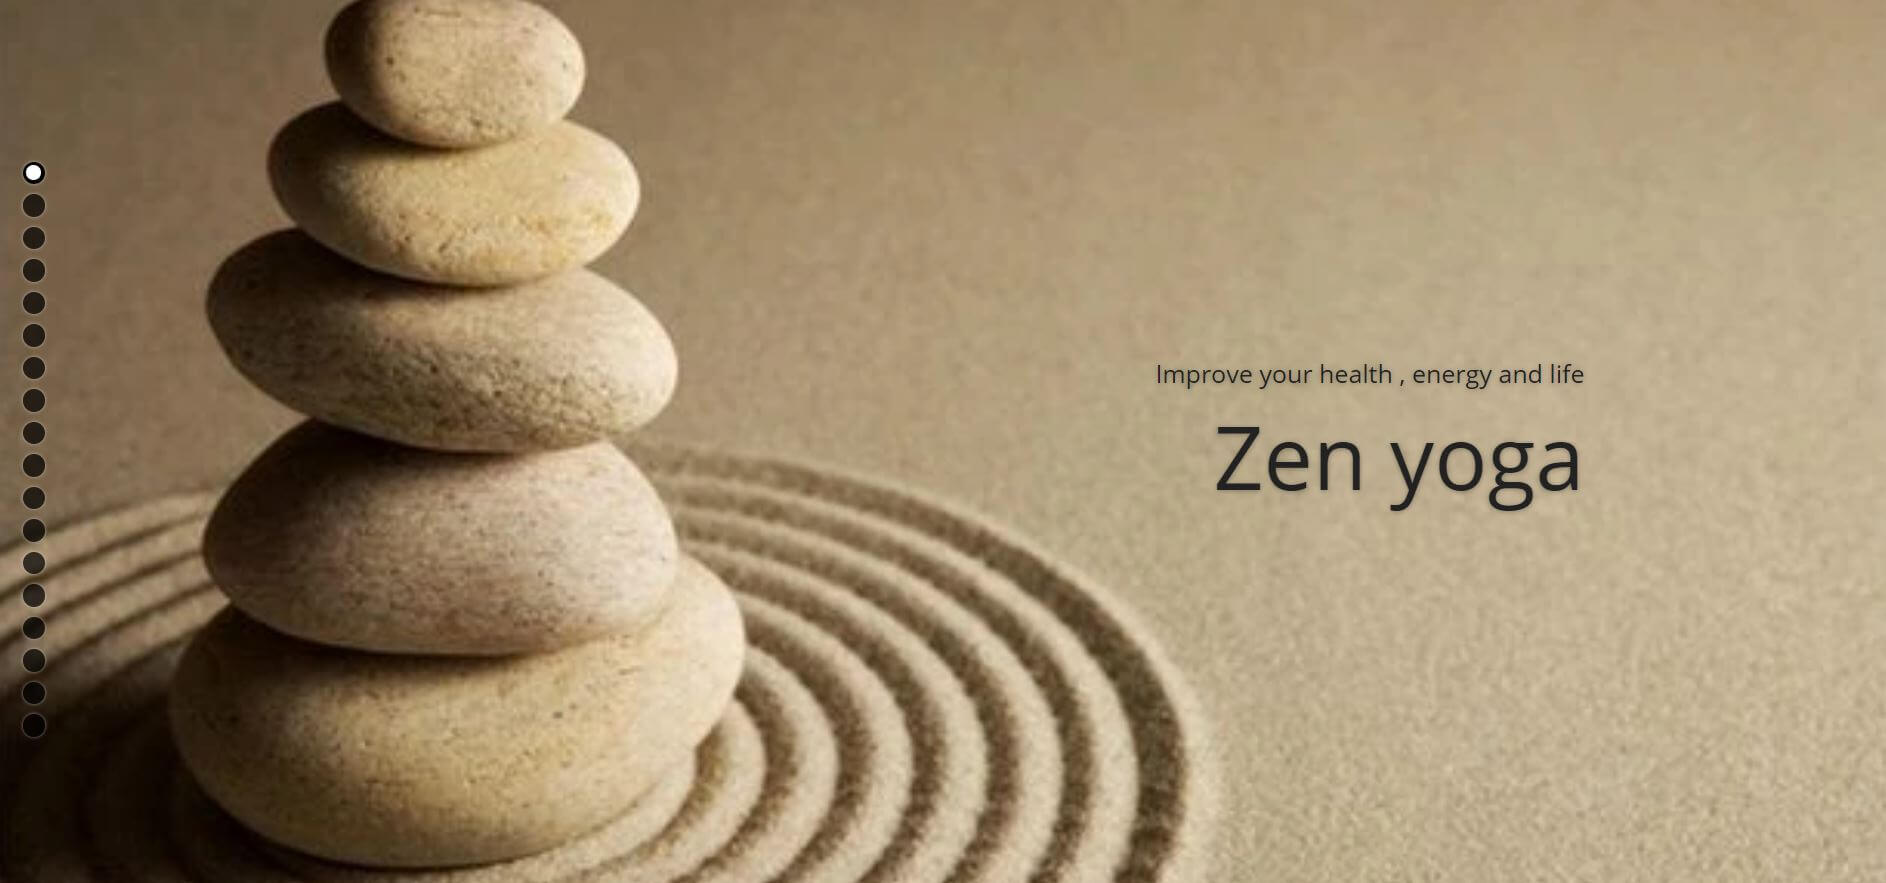 Zen yoga